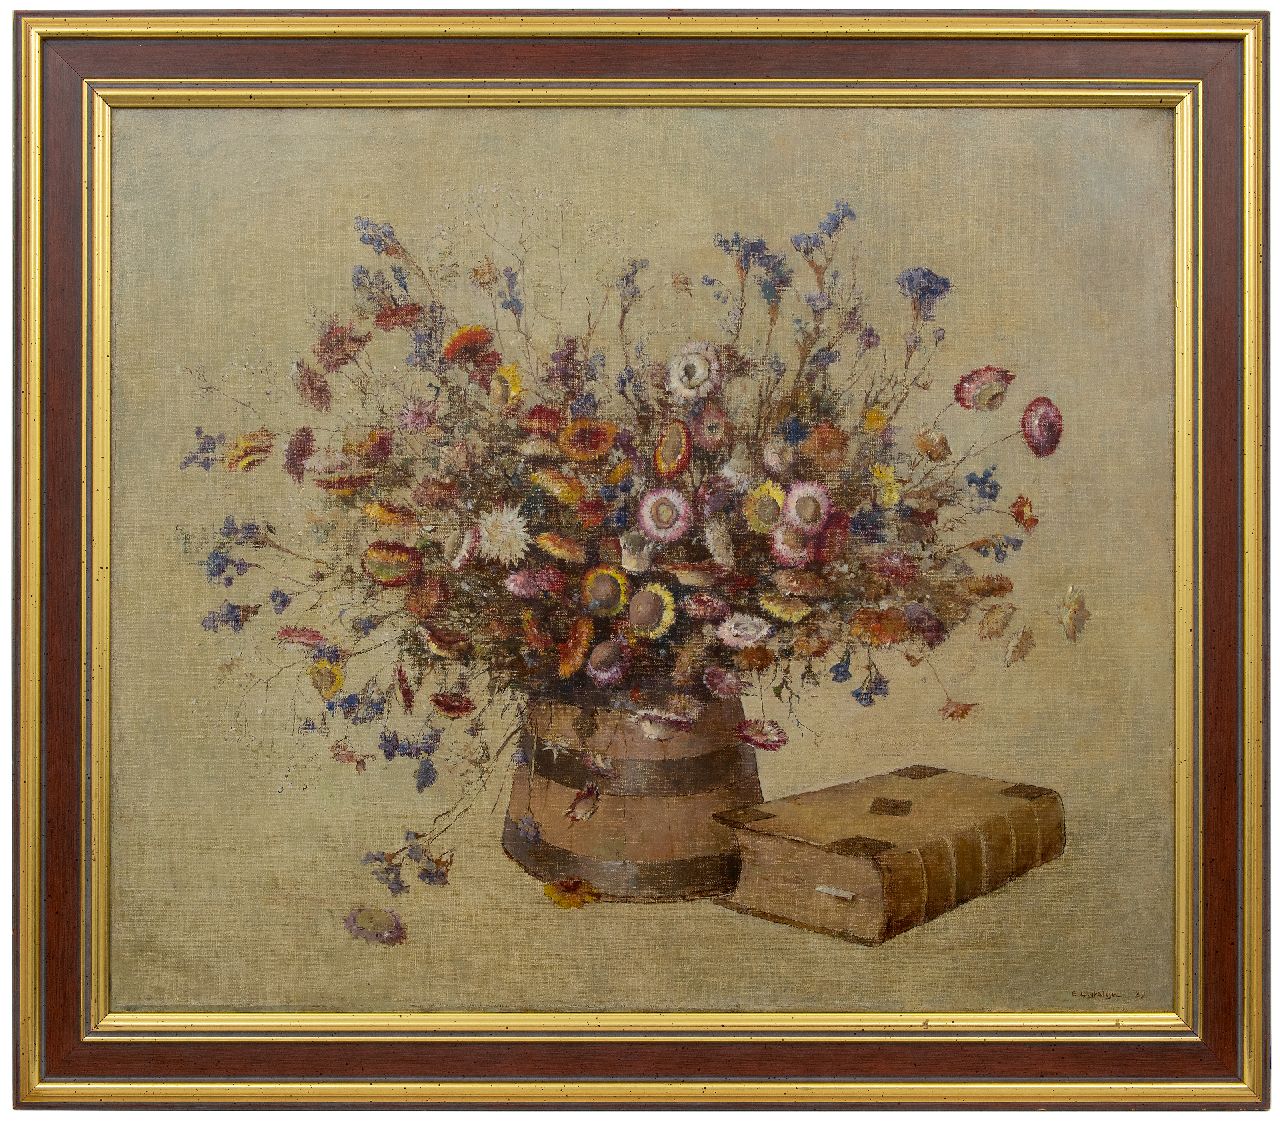 Ligtelijn E.J.  | Evert Jan Ligtelijn | Schilderijen te koop aangeboden | Stilleven met droogbloemen, olieverf op doek 75,0 x 88,0 cm, gesigneerd rechtsonder en gedateerd '37